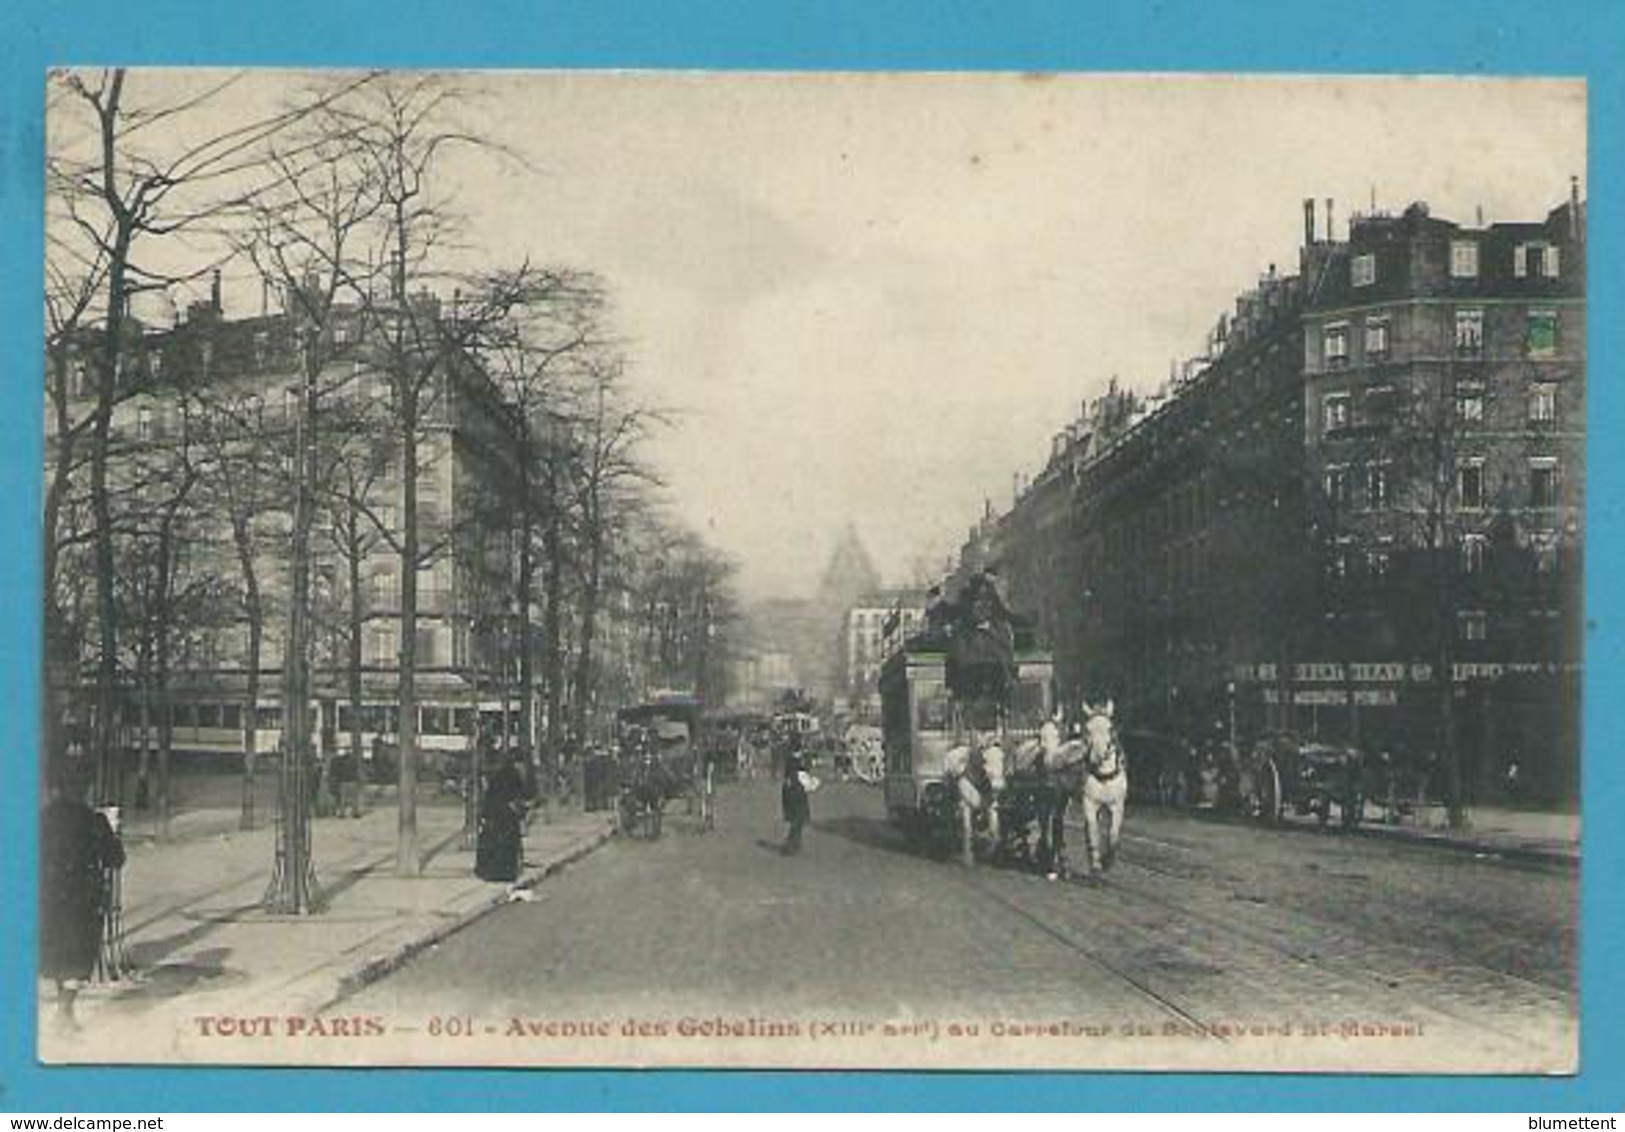 CPA TOUT PARIS 601 - Patache Attelage Avenue Des Gobelins Au Carrefour Du Bld St Marcel (XIIIème) - Paris (13)